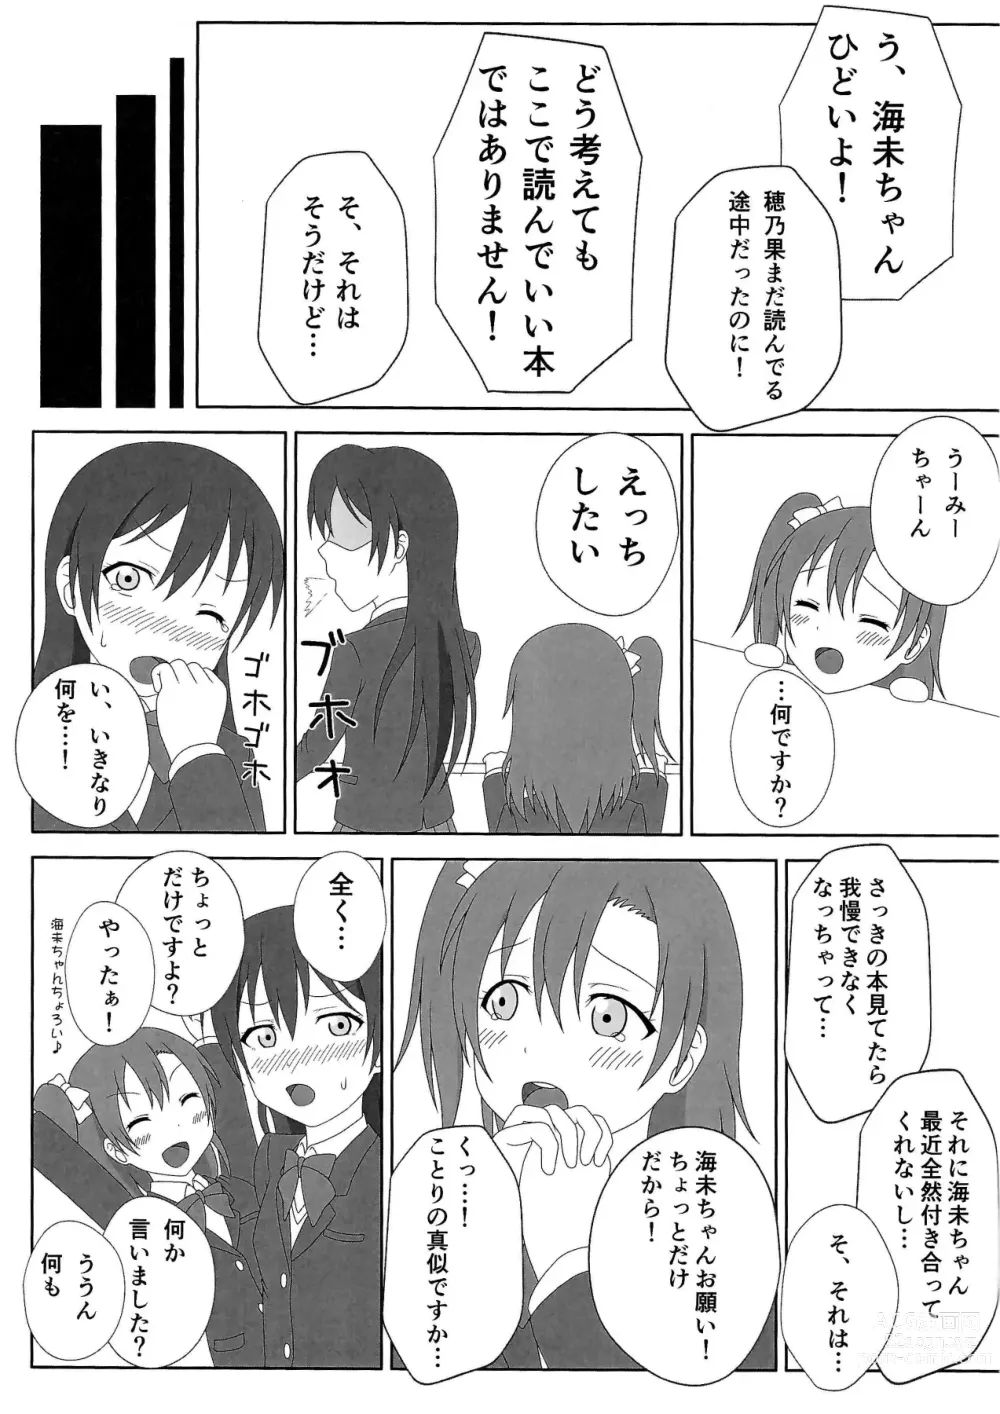 Page 4 of doujinshi HonoUmi Ecchi